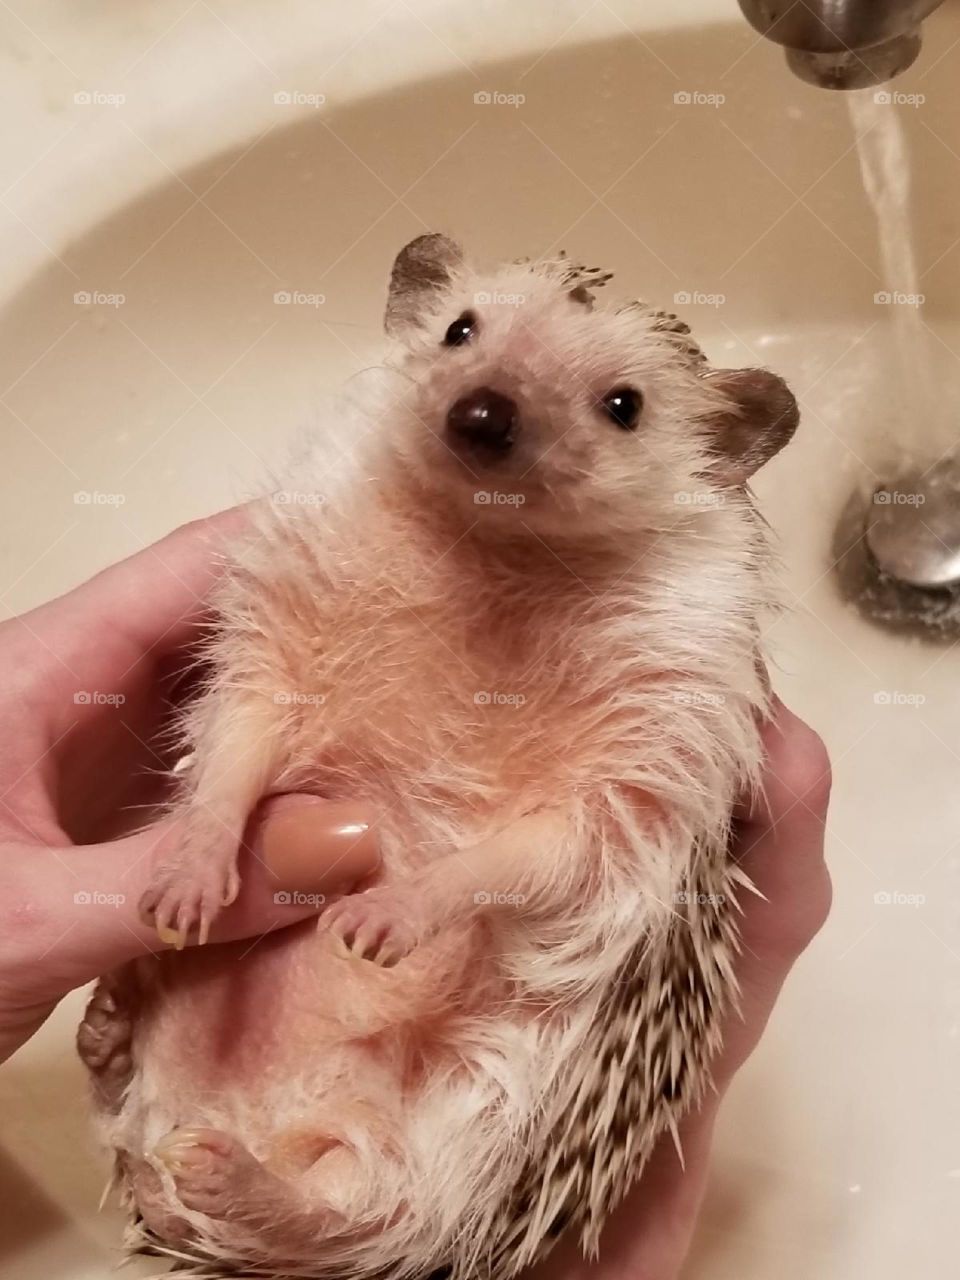 Cute Baby hedgehog getting getting ready for bath time